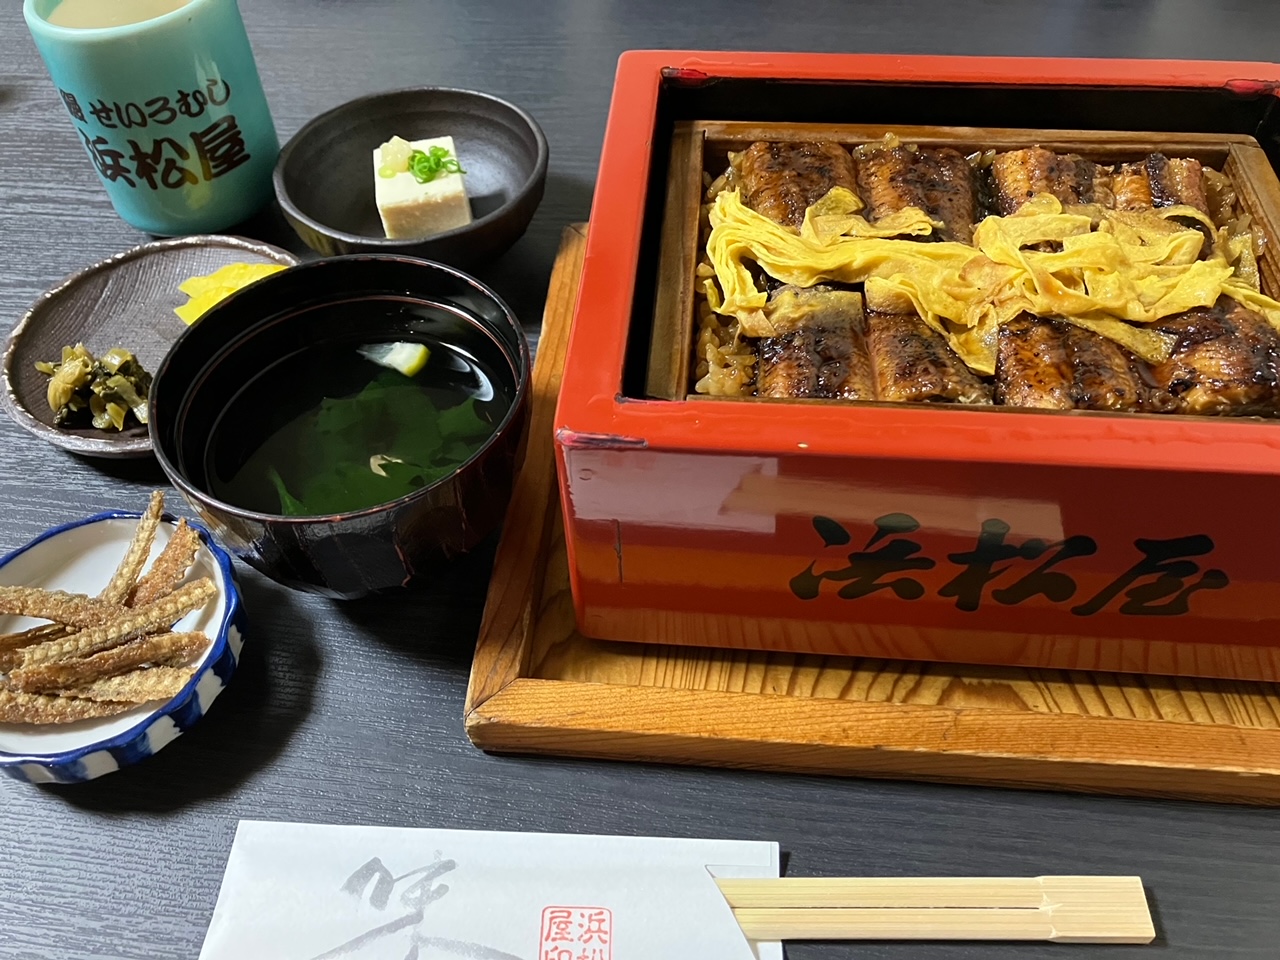 滞仏日記「ついに、九州に上陸した我が息子、ぼくの母さんと柳川へ鰻を食べに行く」